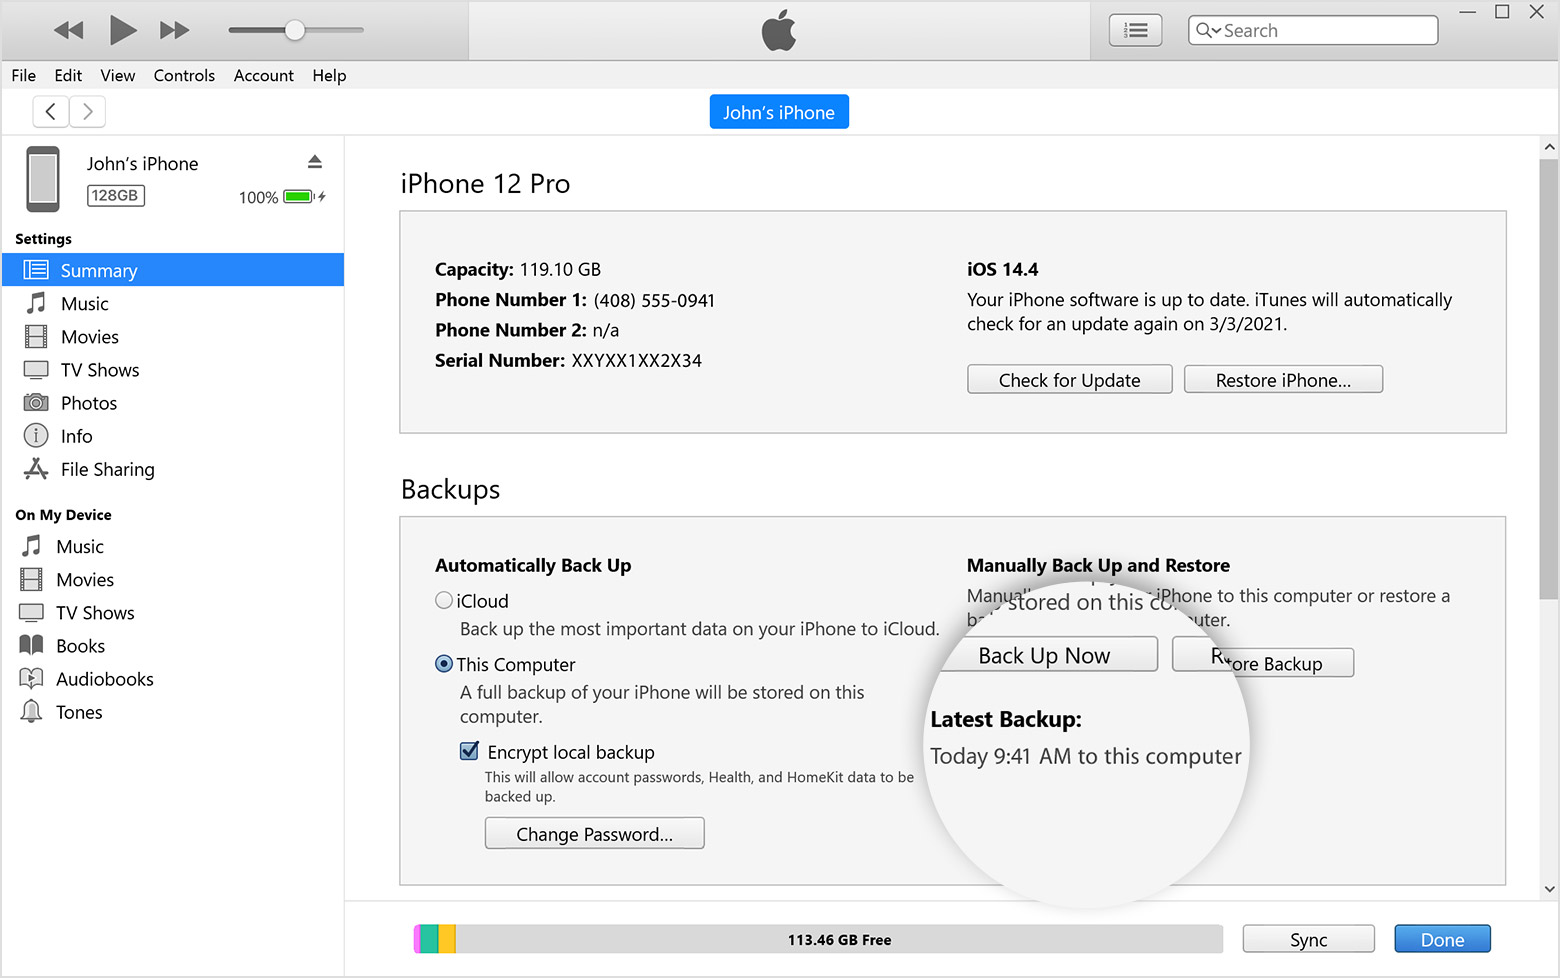 نافذة iTunes تعرض علامة التبويب "الملخص" حيث تم تكبير تاريخ إنشاء آخر نسخة احتياطية وتوقيتها أسفل زر "نسخ احتياطي الآن"